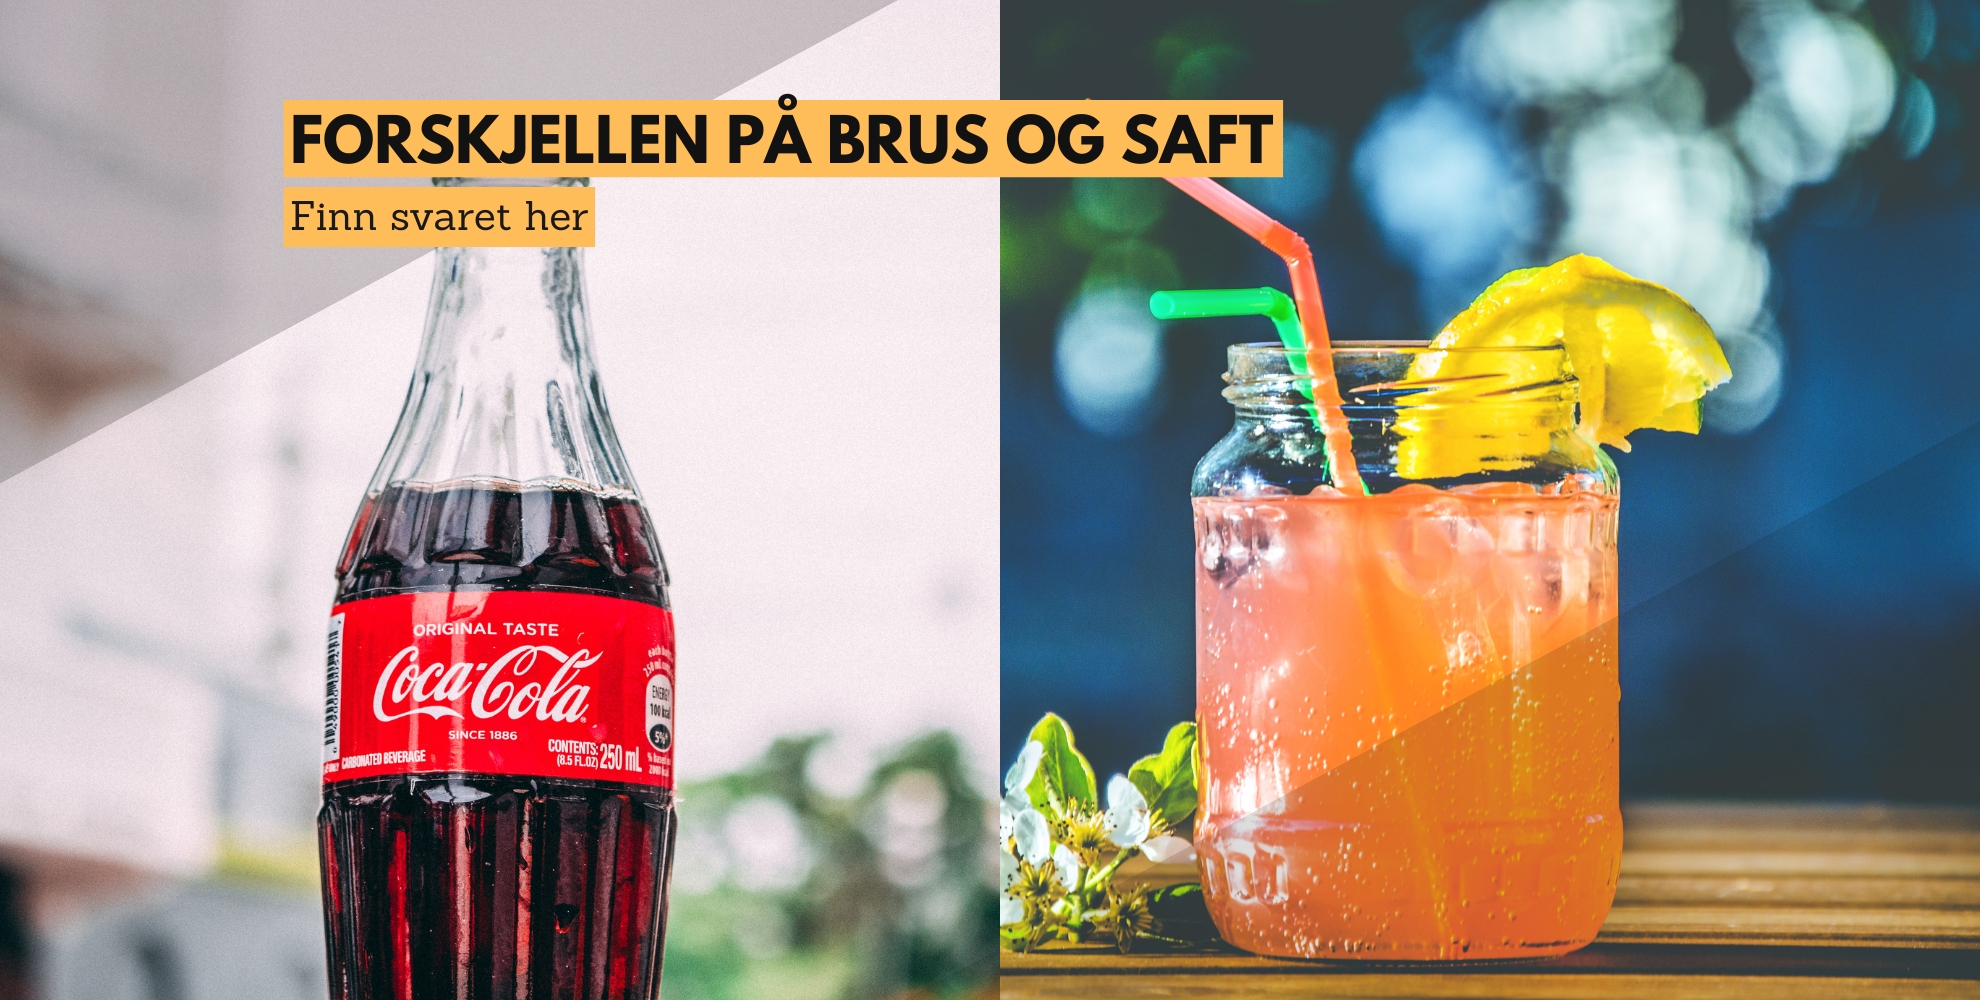 Bilde av coca cola og en saft, med tekst som sier: Forskjellen på brus og saft, finn svaret her